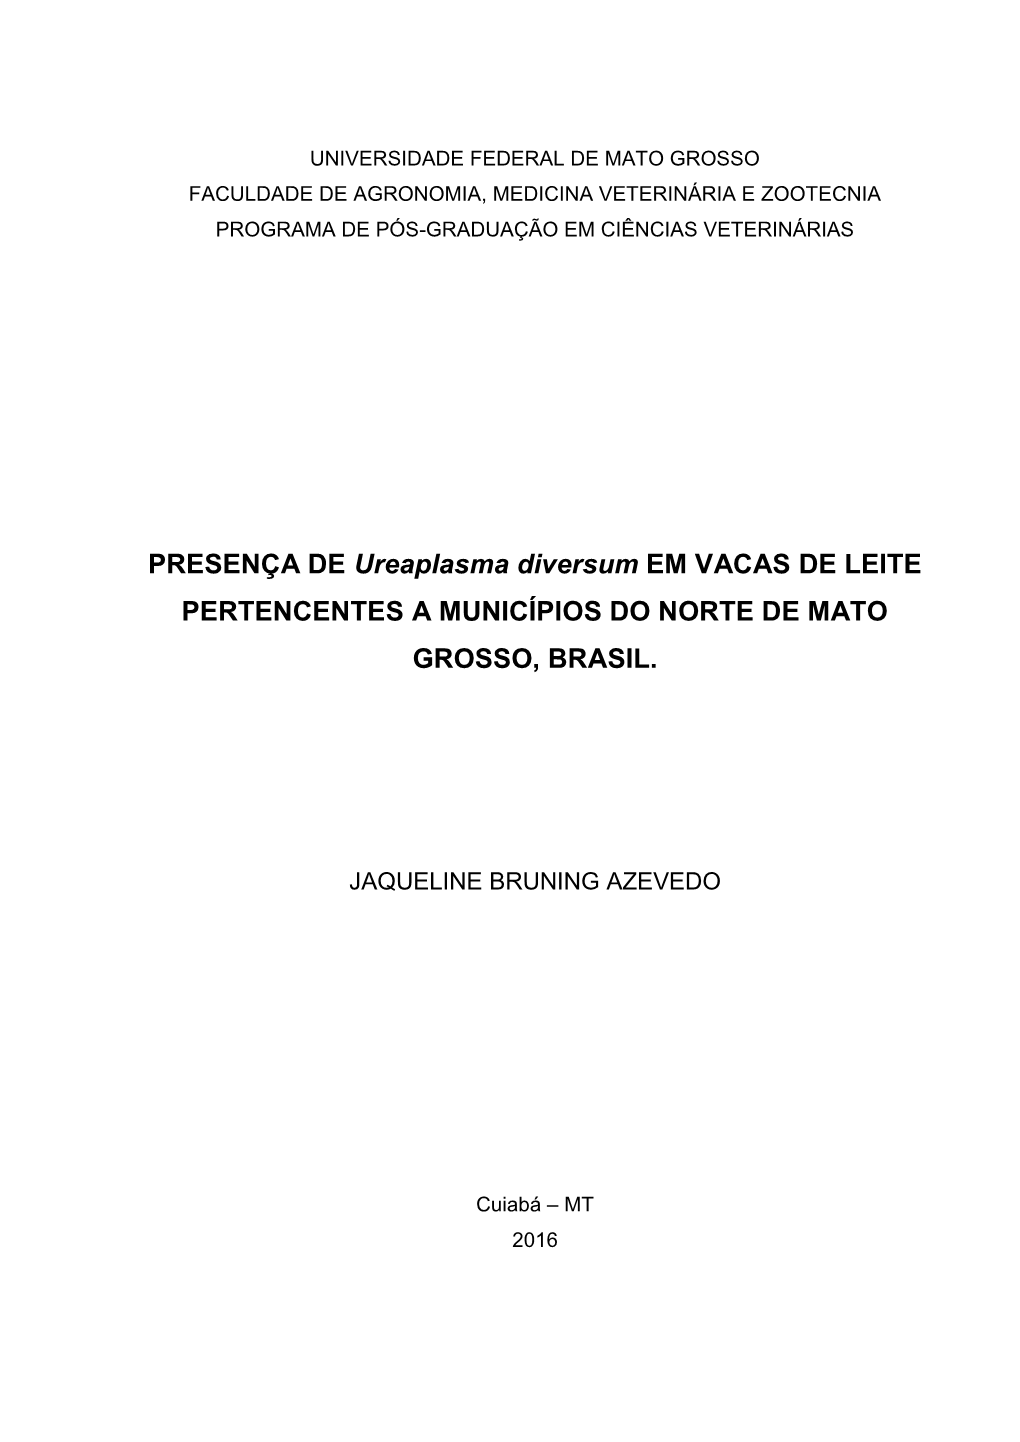 PRESENÇA DE Ureaplasma Diversum EM VACAS DE LEITE PERTENCENTES a MUNICÍPIOS DO NORTE DE MATO GROSSO, BRASIL